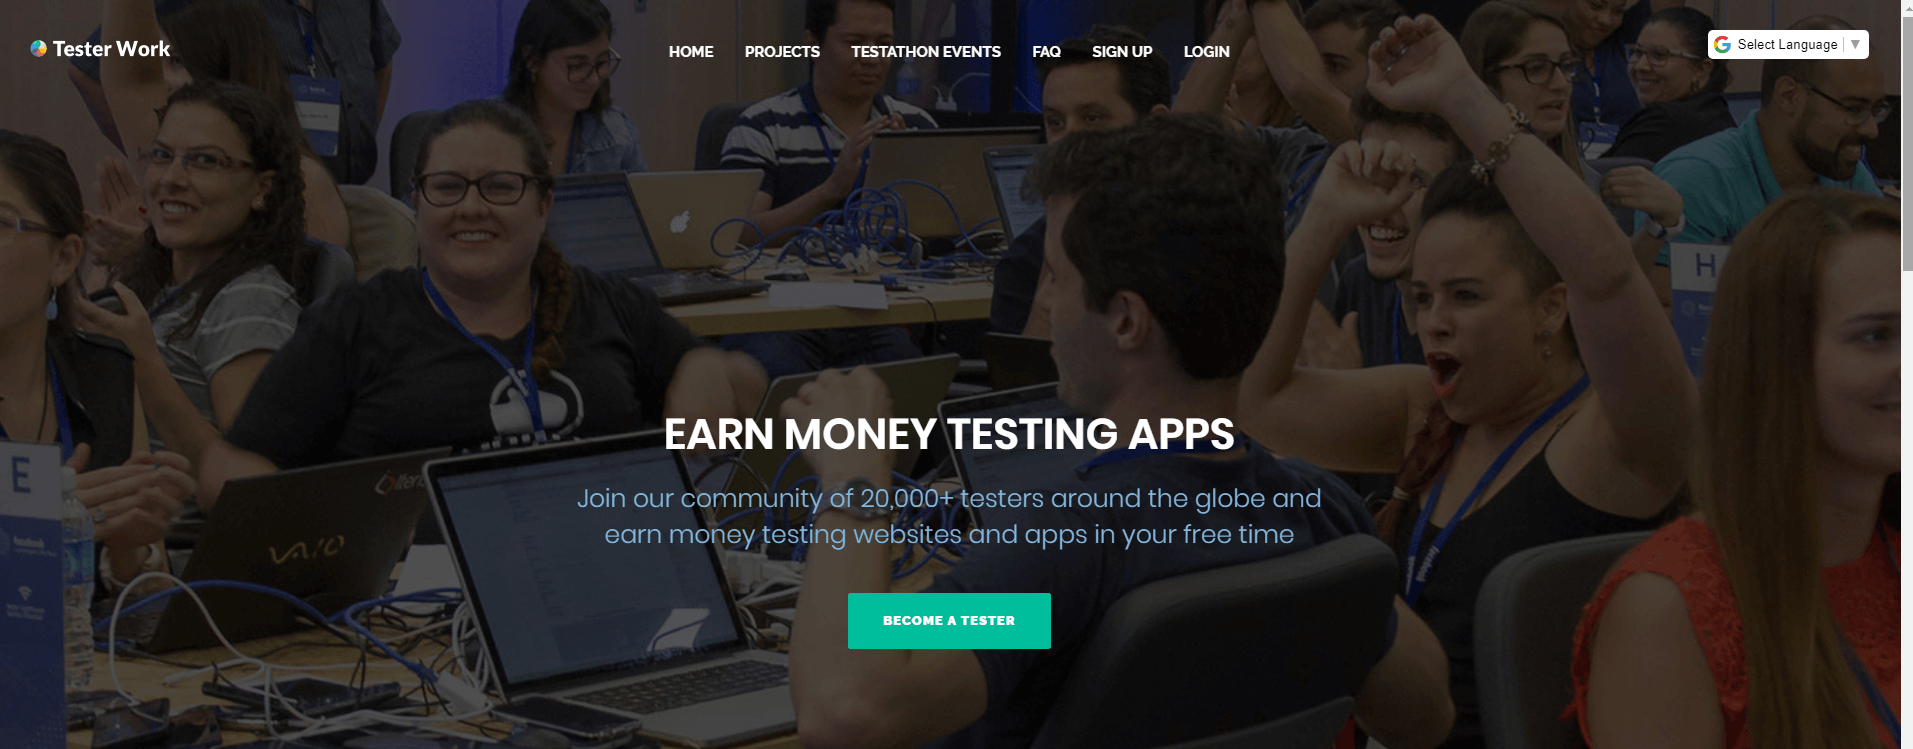 Tester work earn money testing apps